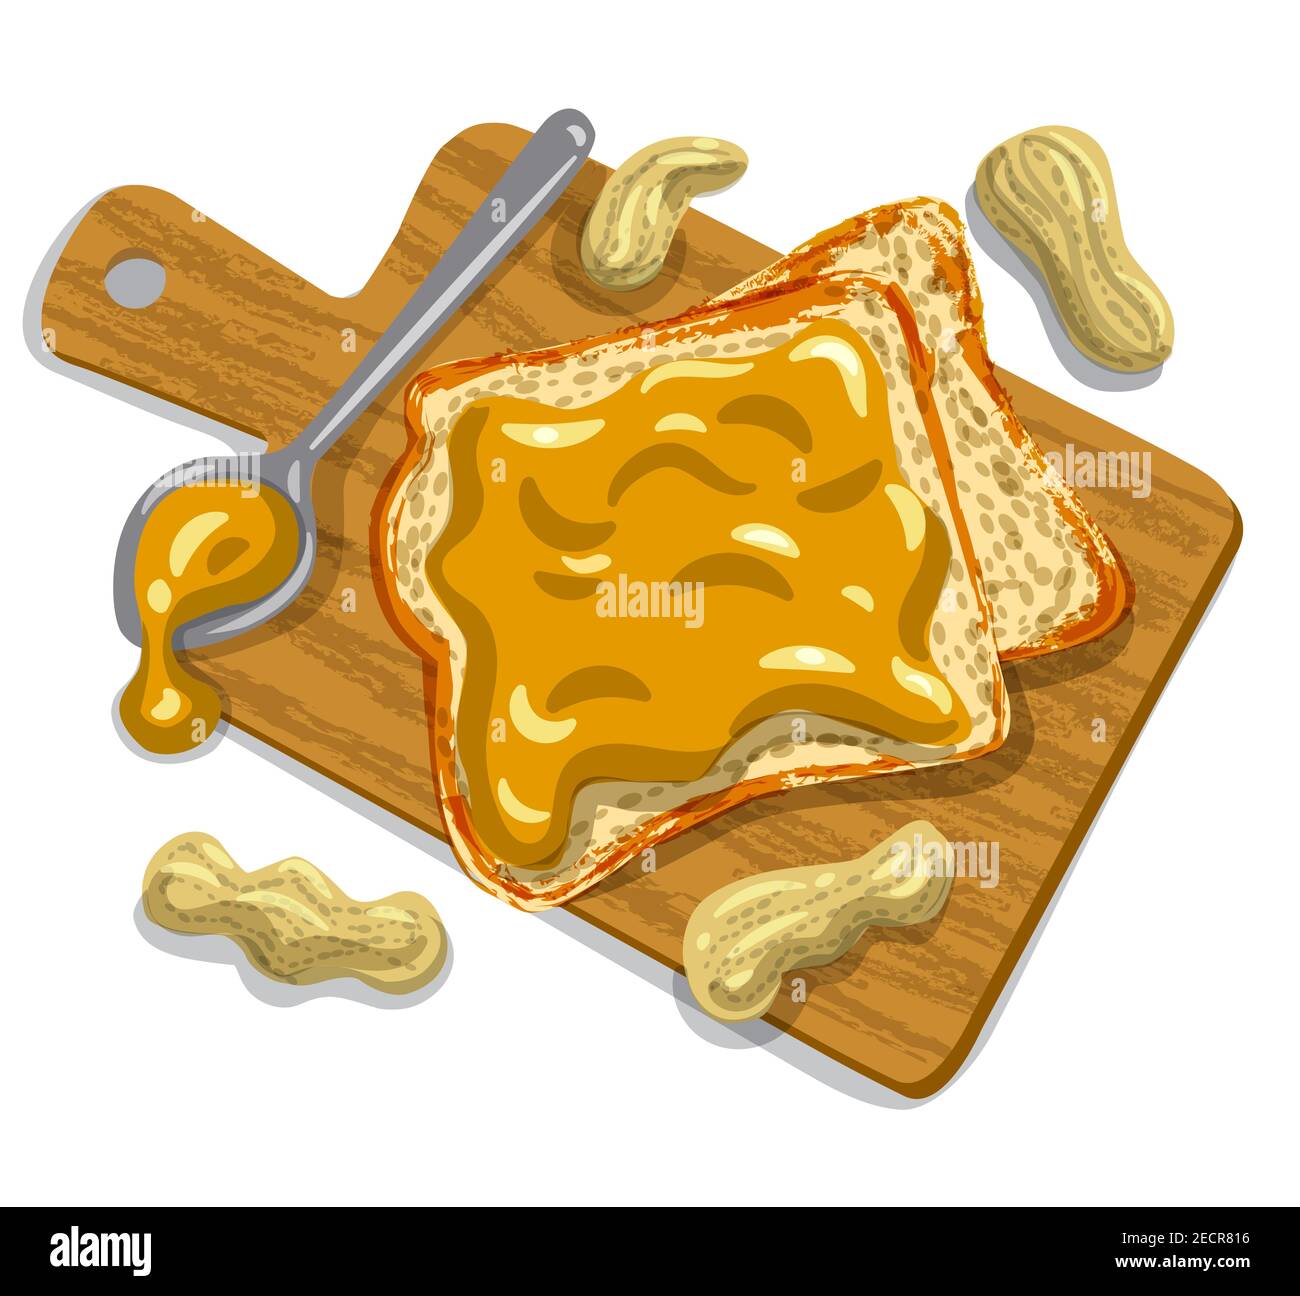 illustrazione dei sandwich di burro di arachidi con arachidi su un asse di legno Illustrazione Vettoriale